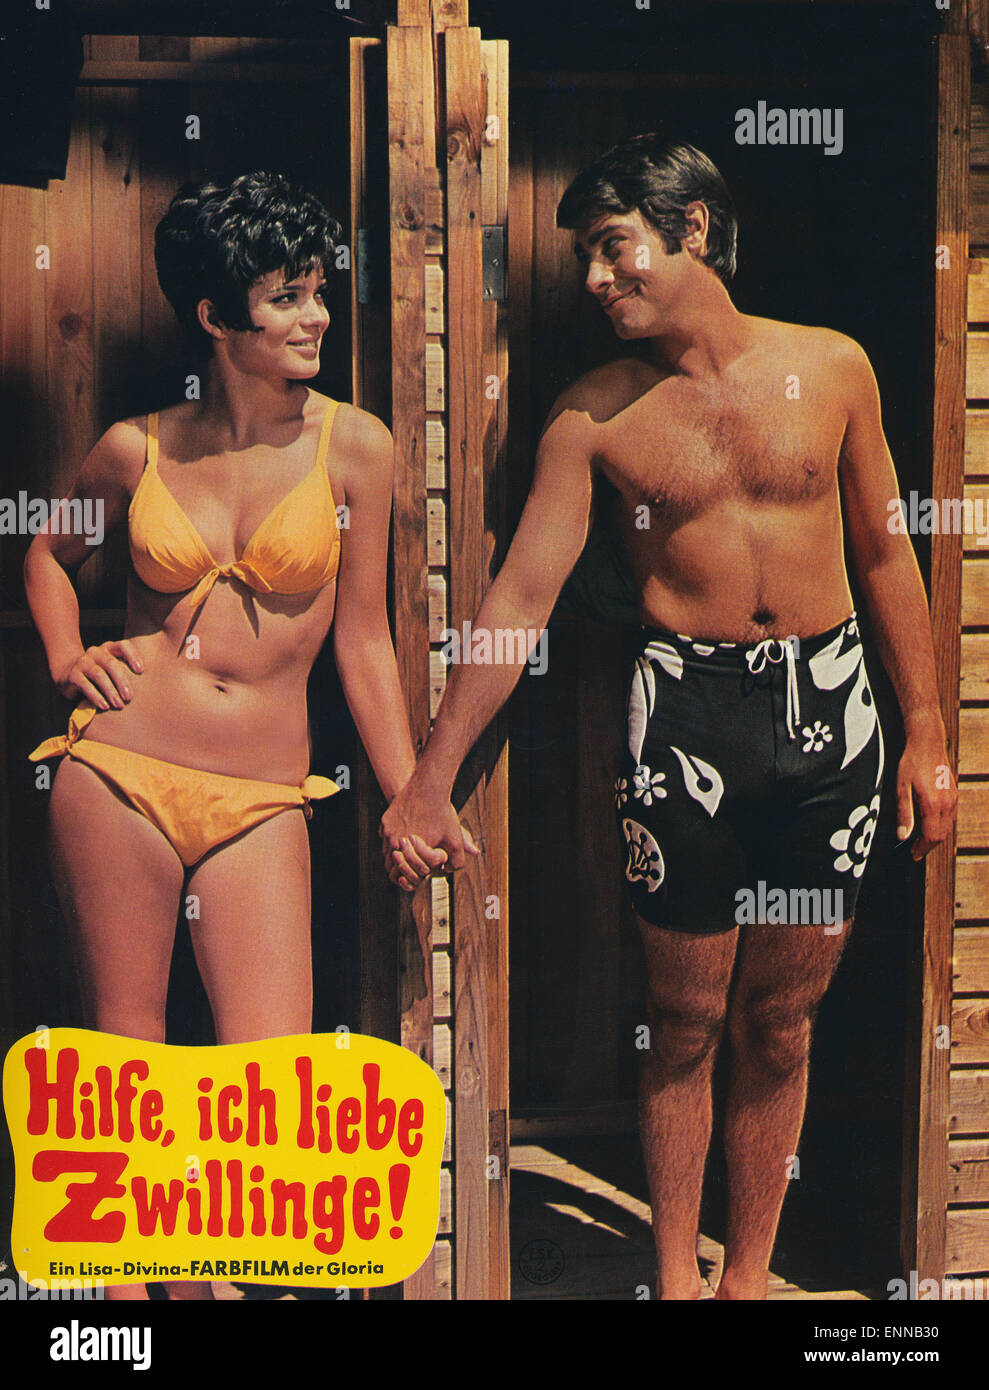 Hilfe, ich liebe Zwillinge, Deutschland 1969, Regie: Peter Weck, Darsteller: Uschi Glas, Roy Black Stock Photo